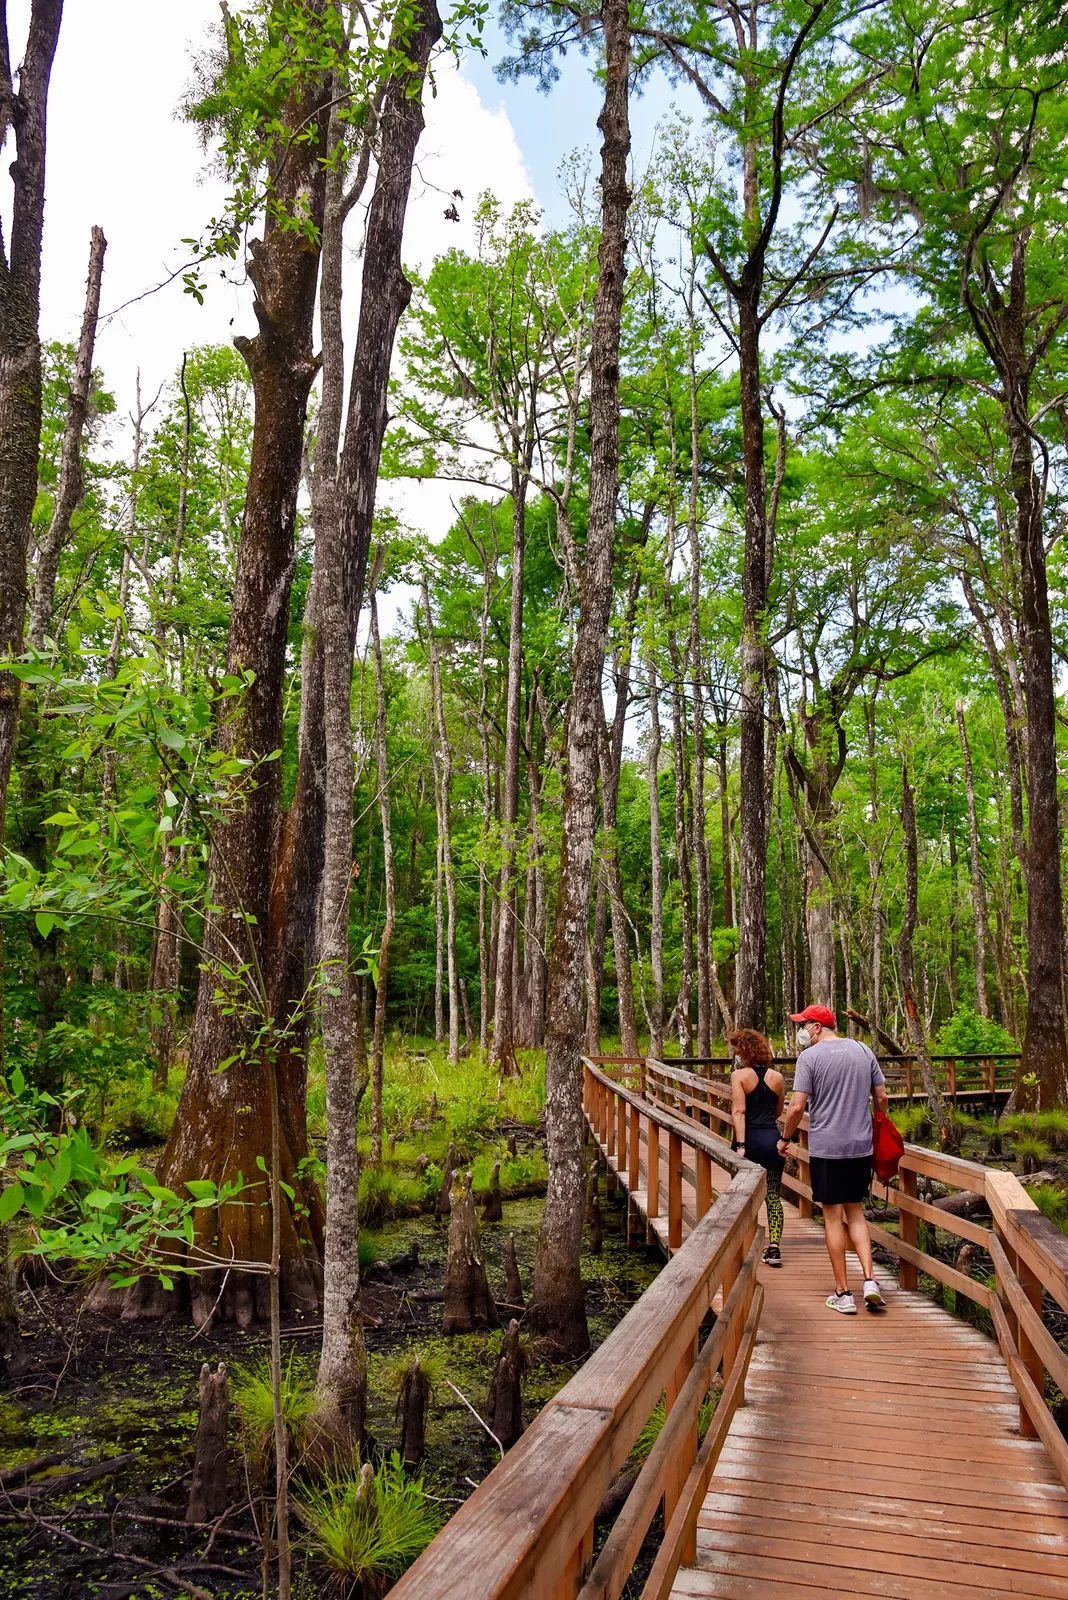 Two guests walking through swamp, on wooden walking bridge.